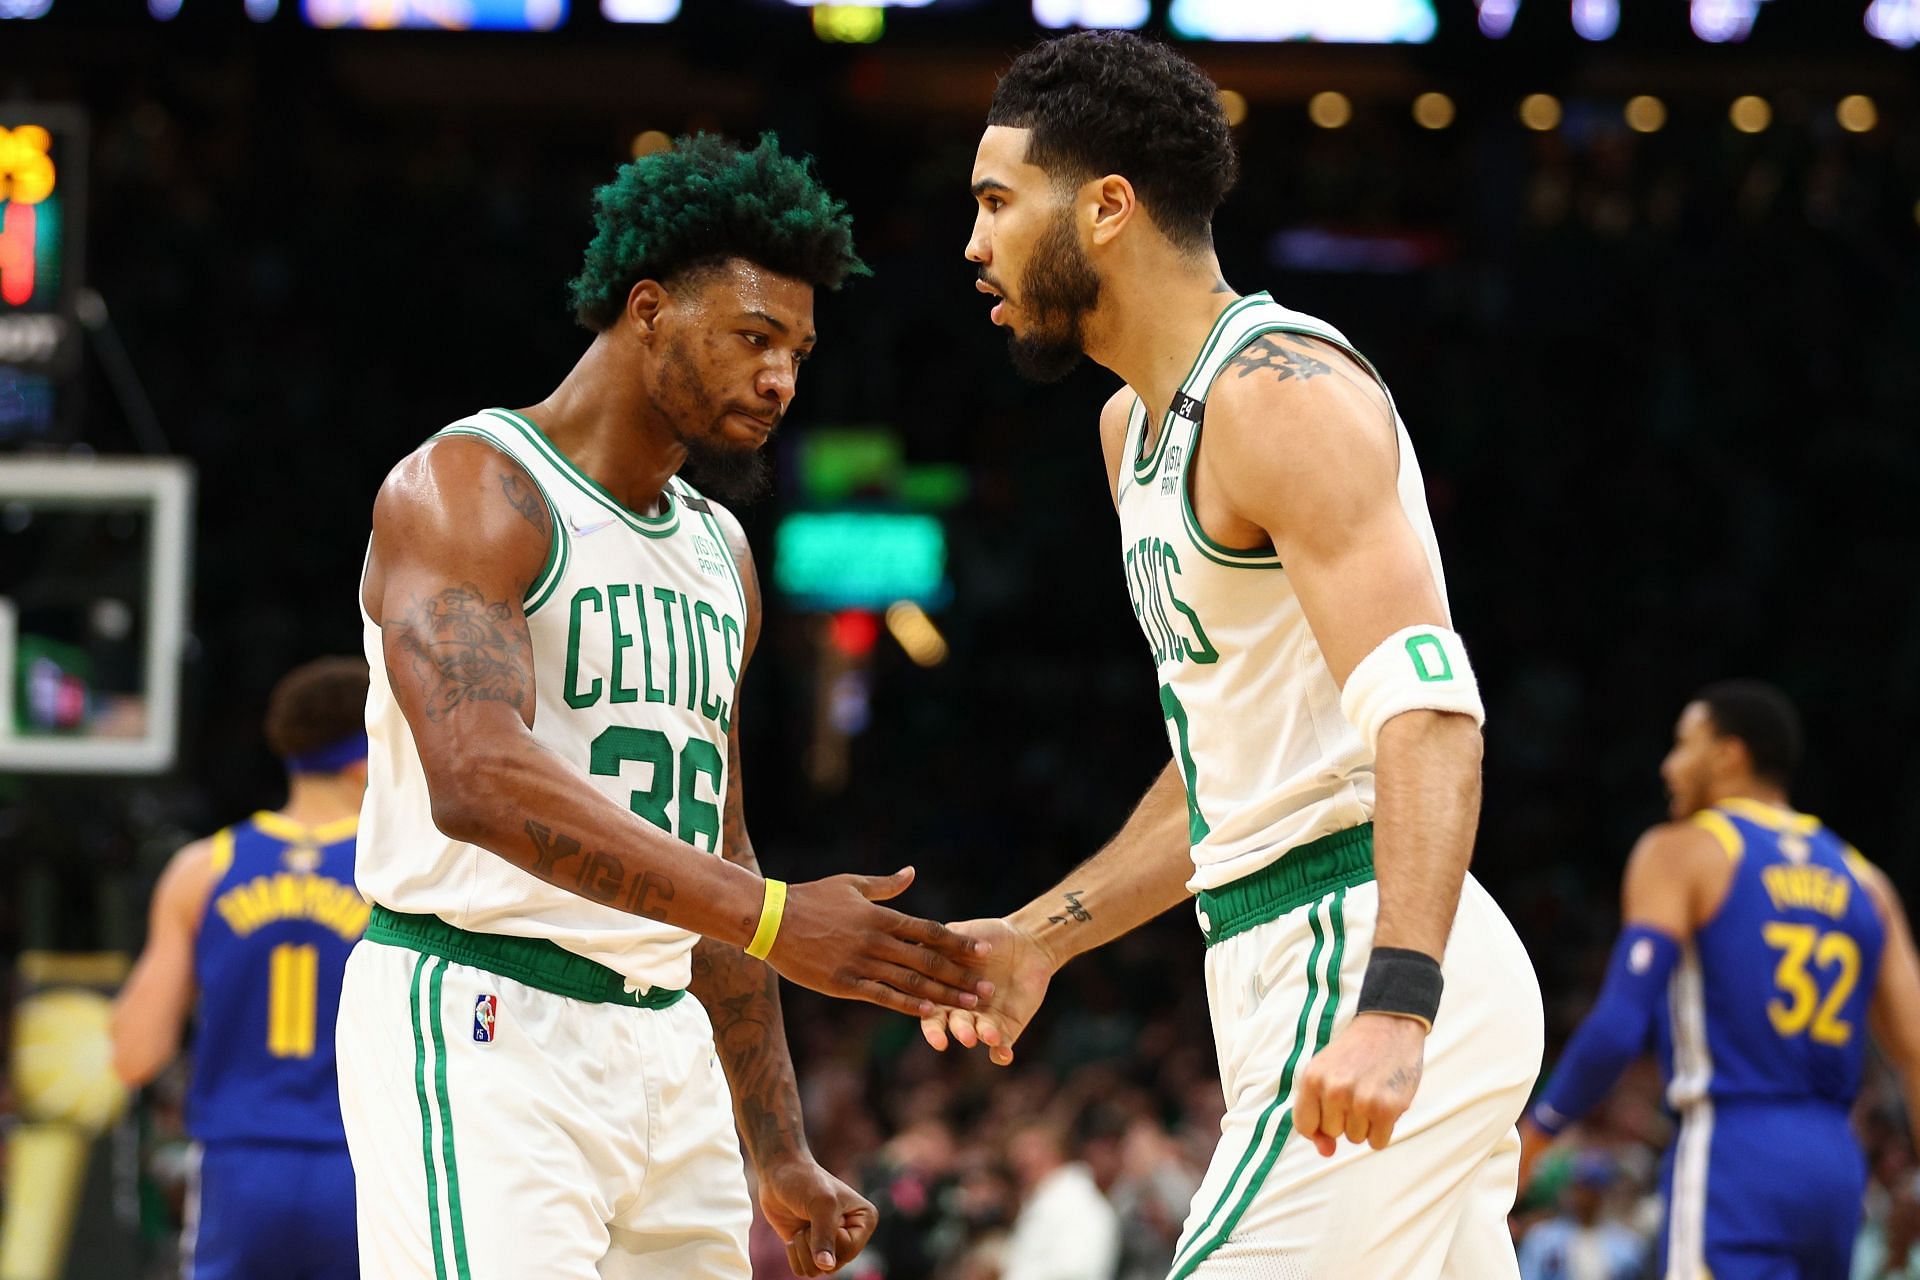 Boston Celtics stars Marcus Smart and Jayson Tatum